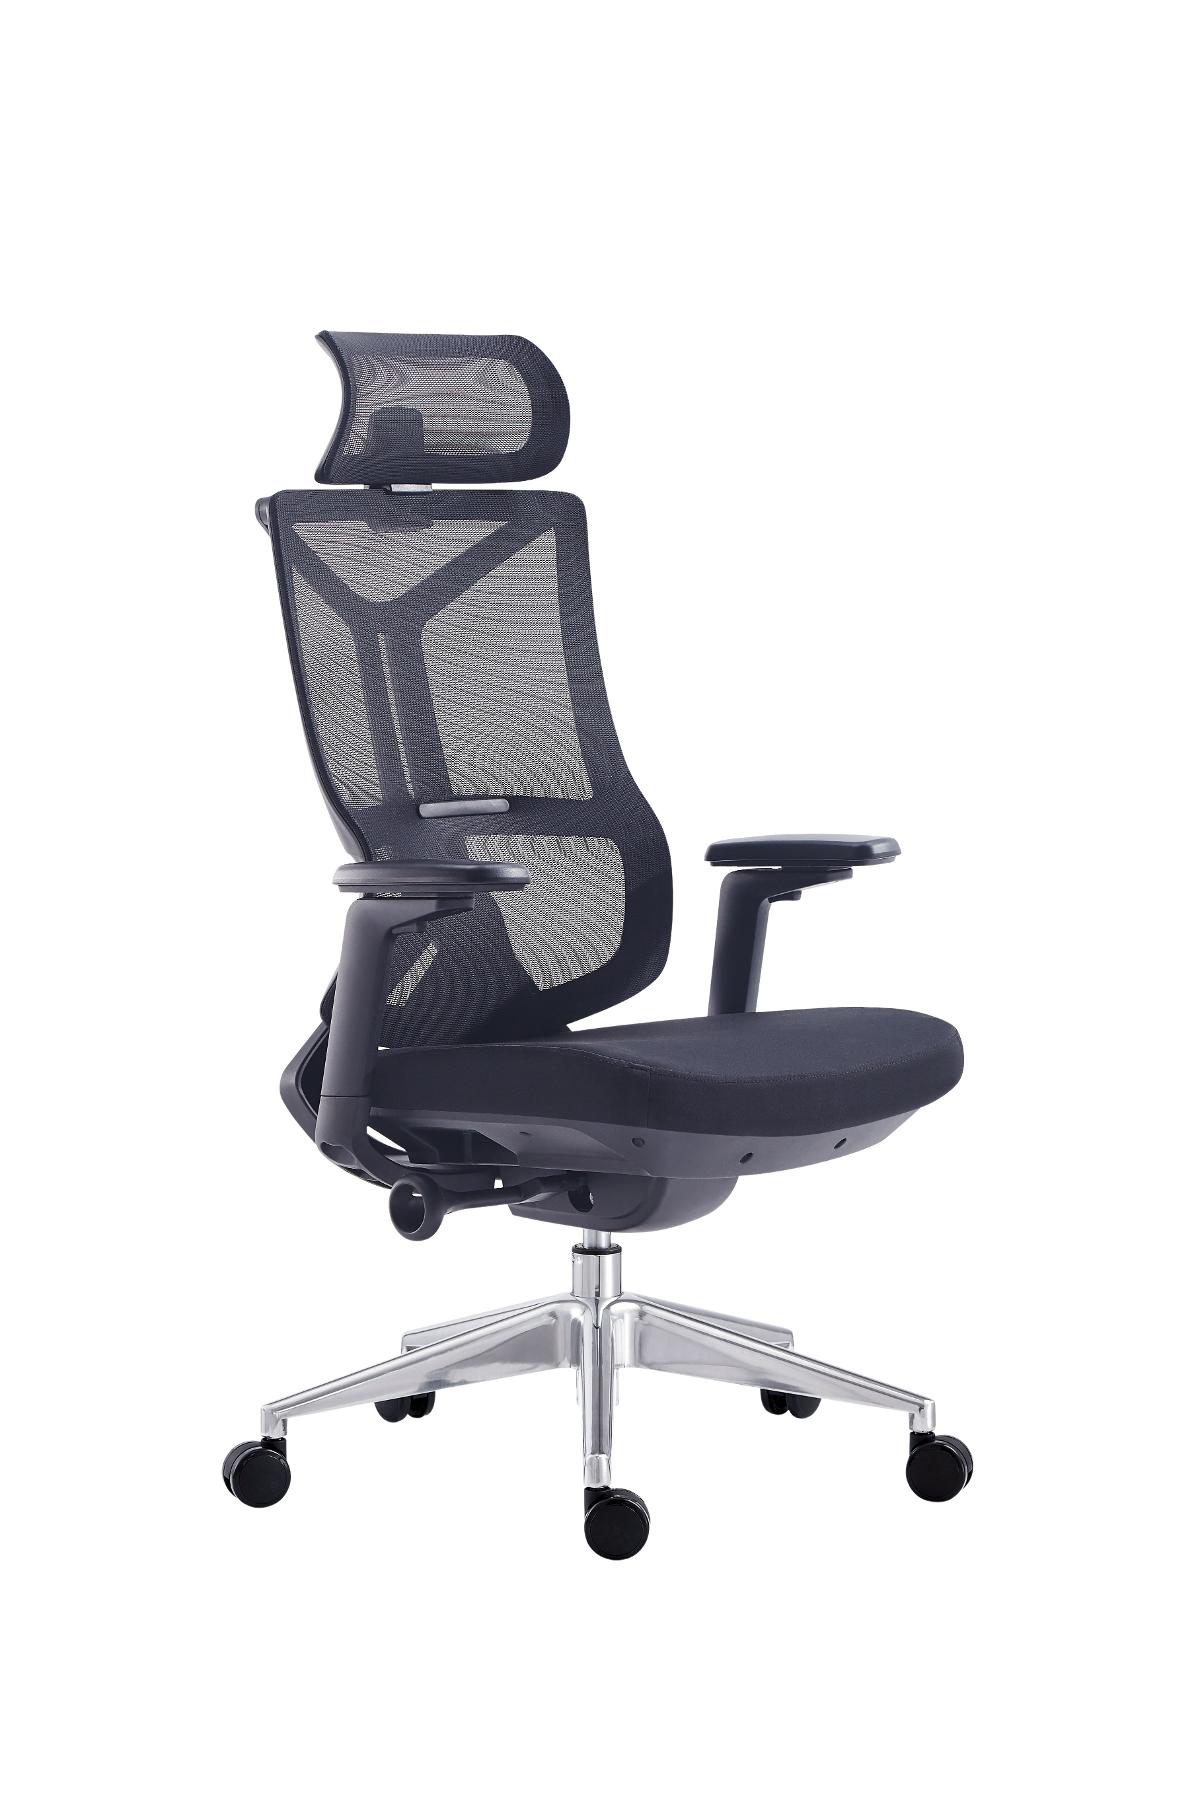 Super Chair เก้าอี้ผู้บริหาร รุ่น CEO BLACK H